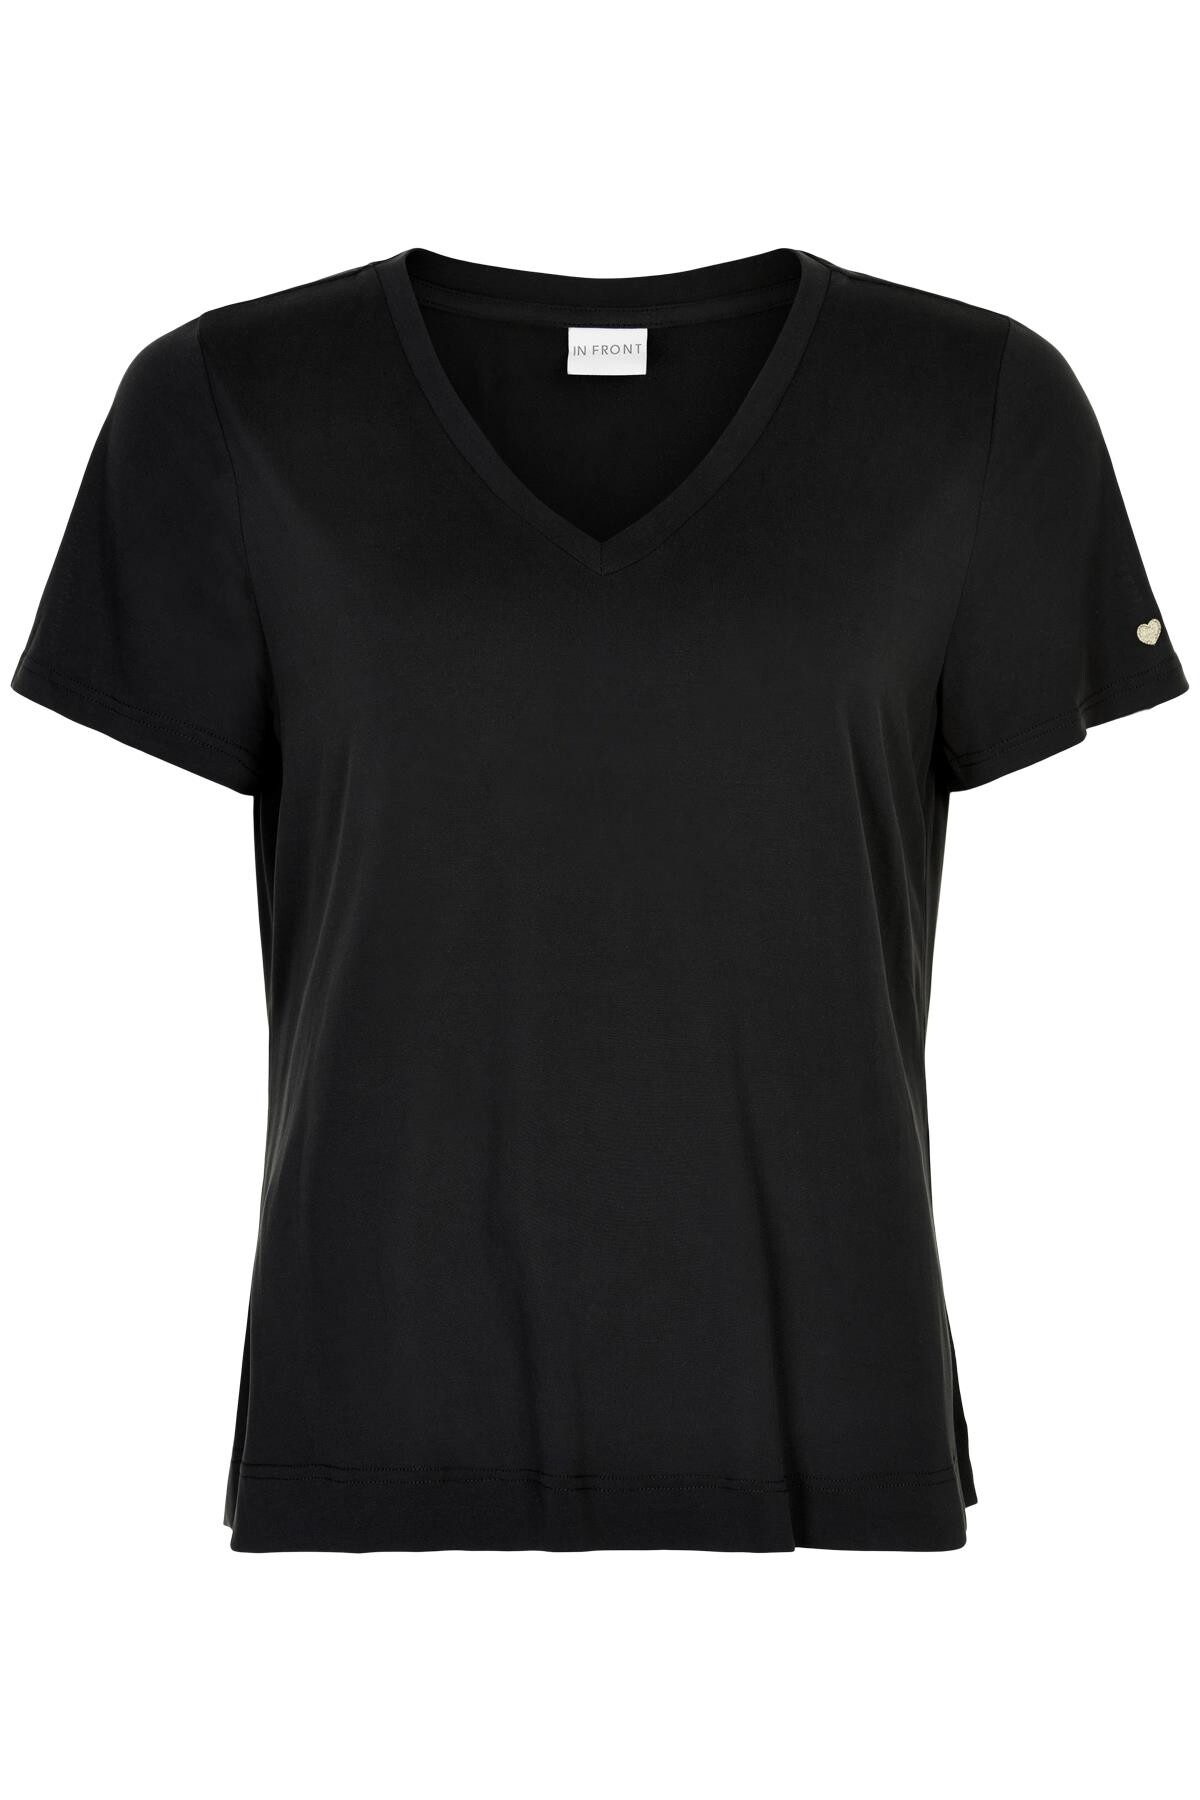 In Front Nina V-neck T-shirt, Farve: Sort, Størrelse: XL, Dame